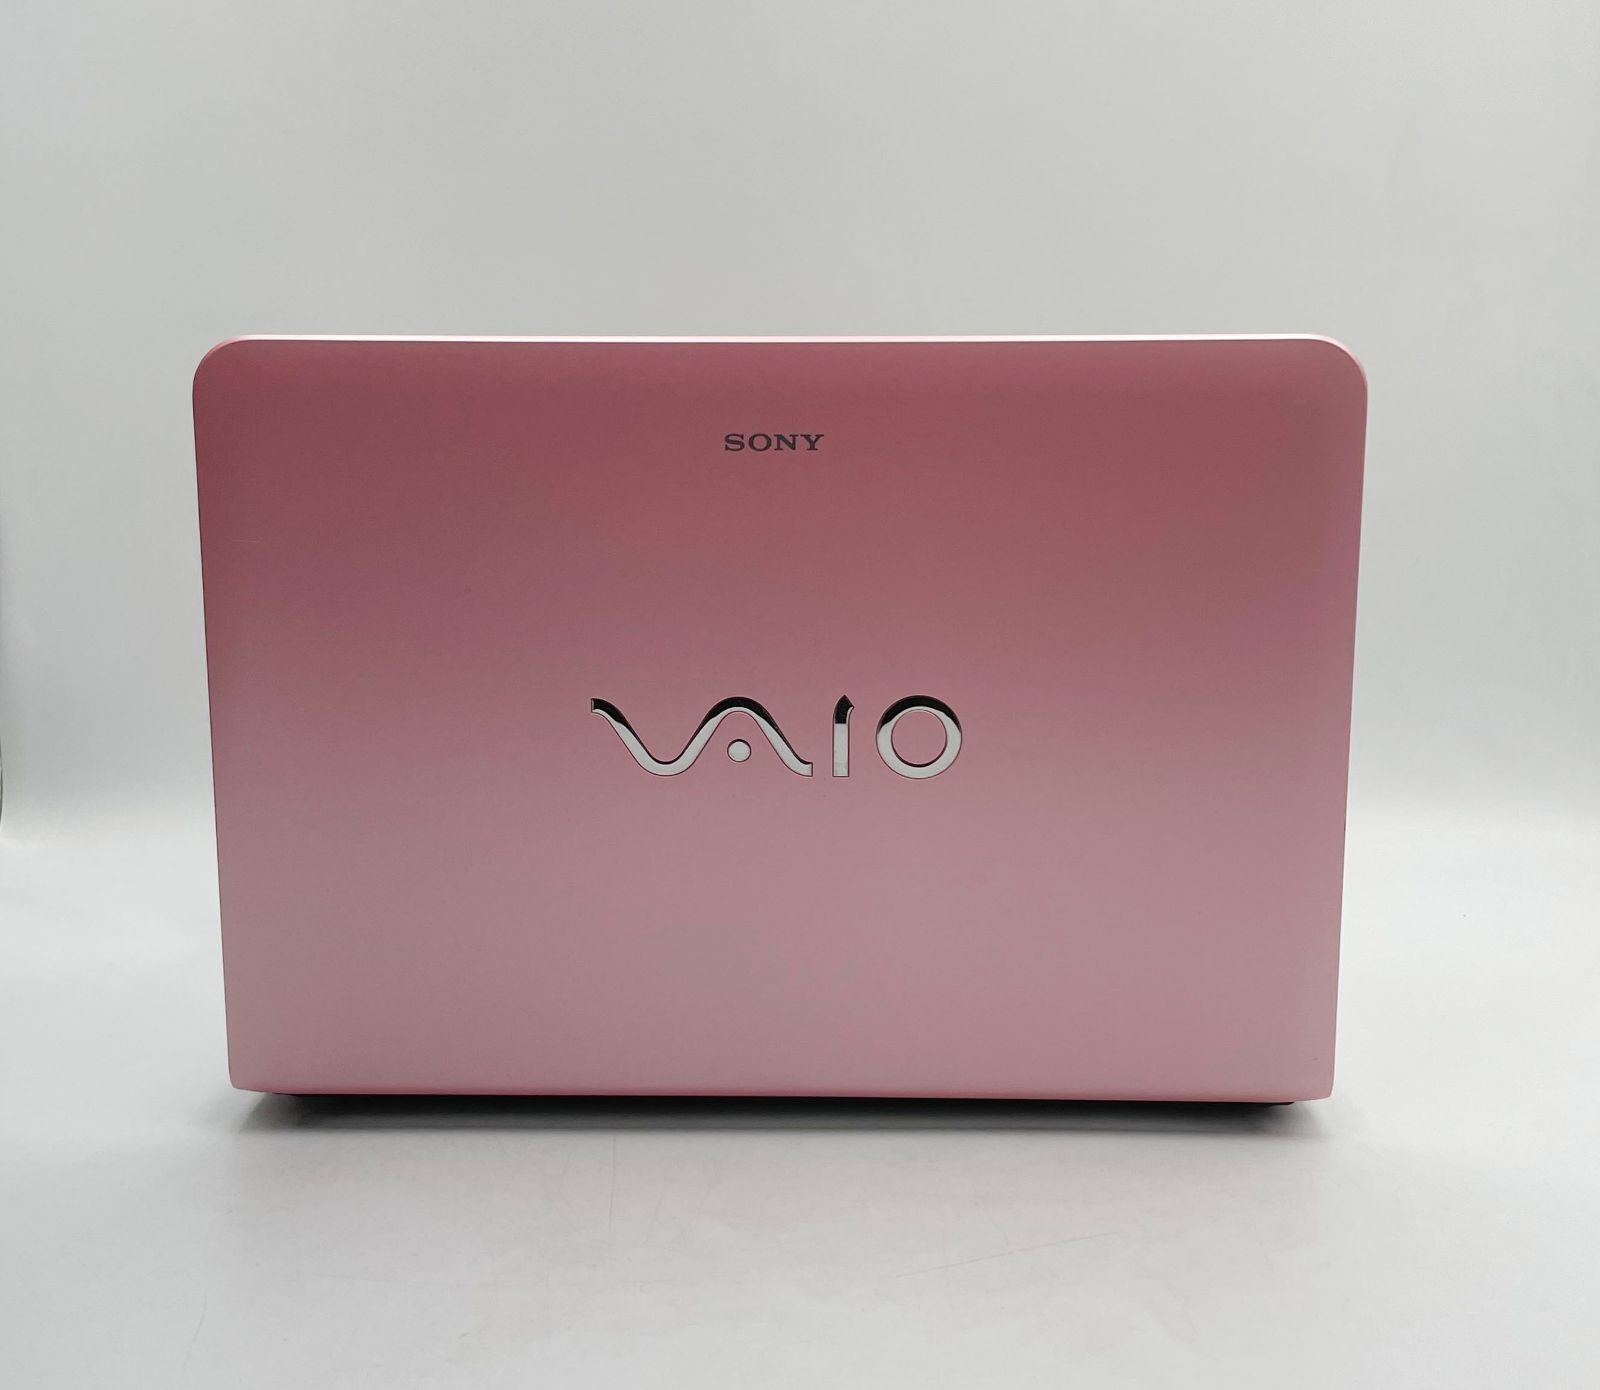 特売 SONY VAIO Eシリーズ SVE1412AJ 3世代Core i3 3110M SSD 128GB